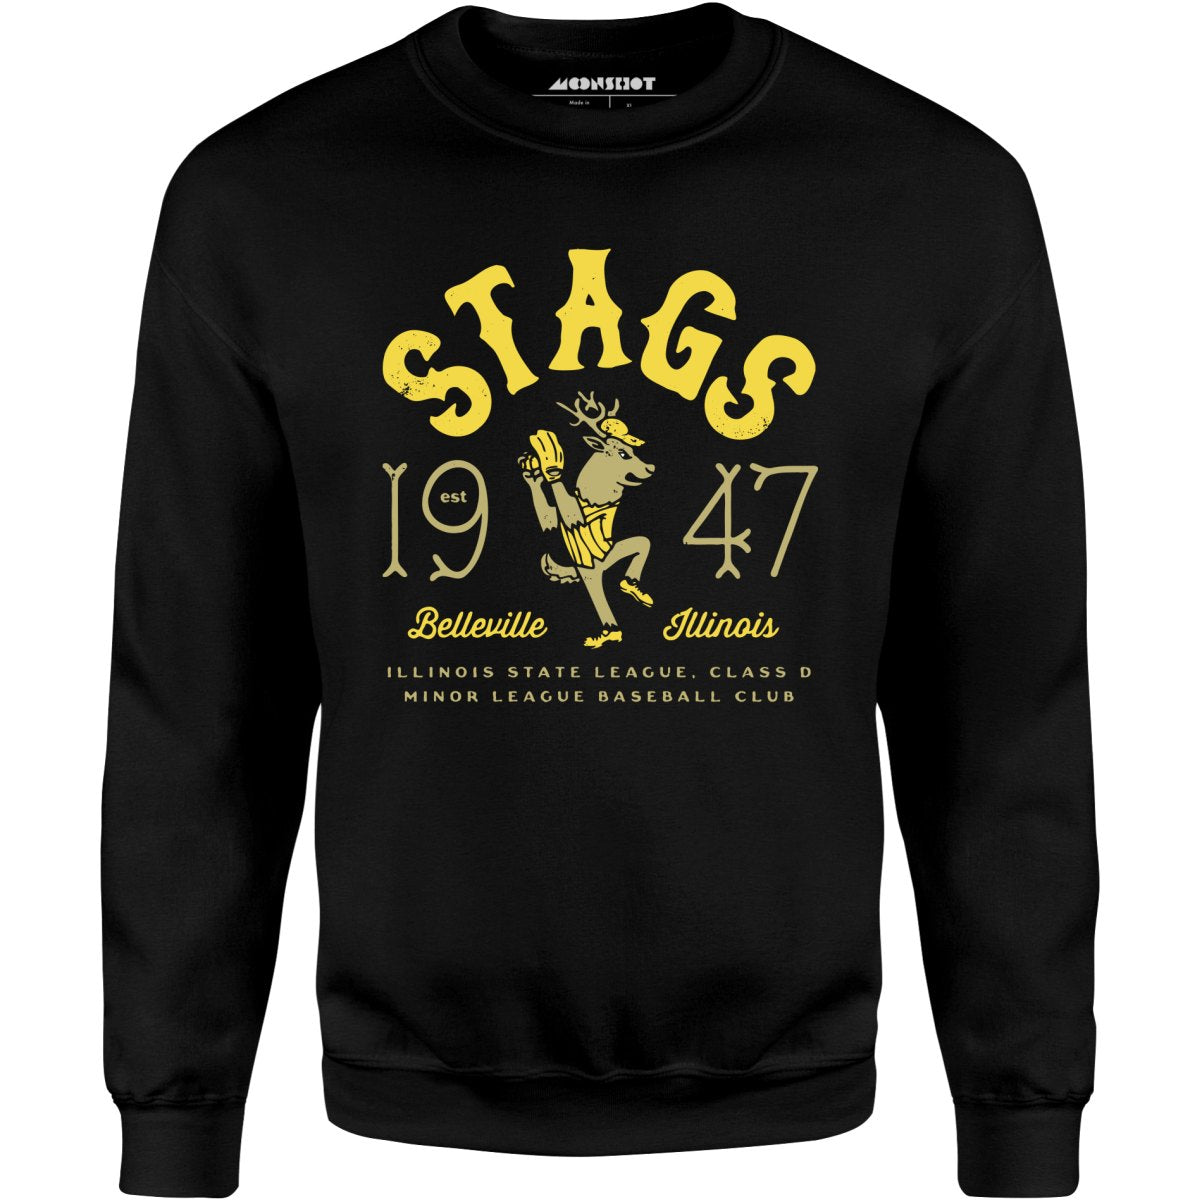 Belleville Stags - Illinois - Vintage Defunct Baseball Teams - Unisex Sweatshirt